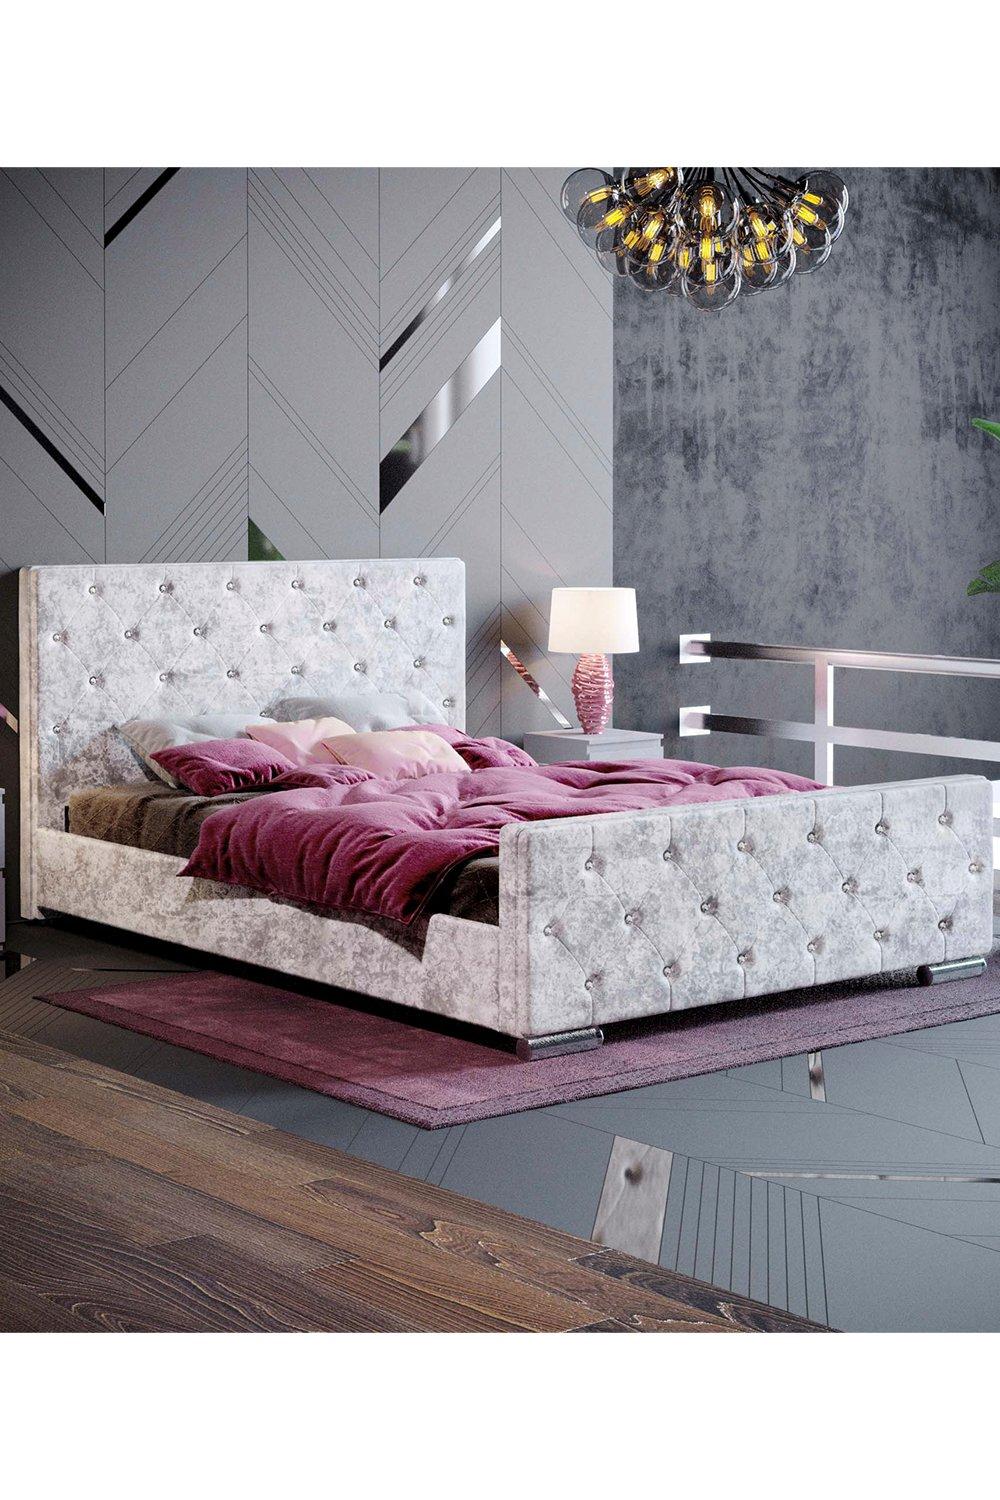 Vida Designs Arabella Double Bed Frame Velvet Fabric 950 x 1450 x 2080 mm